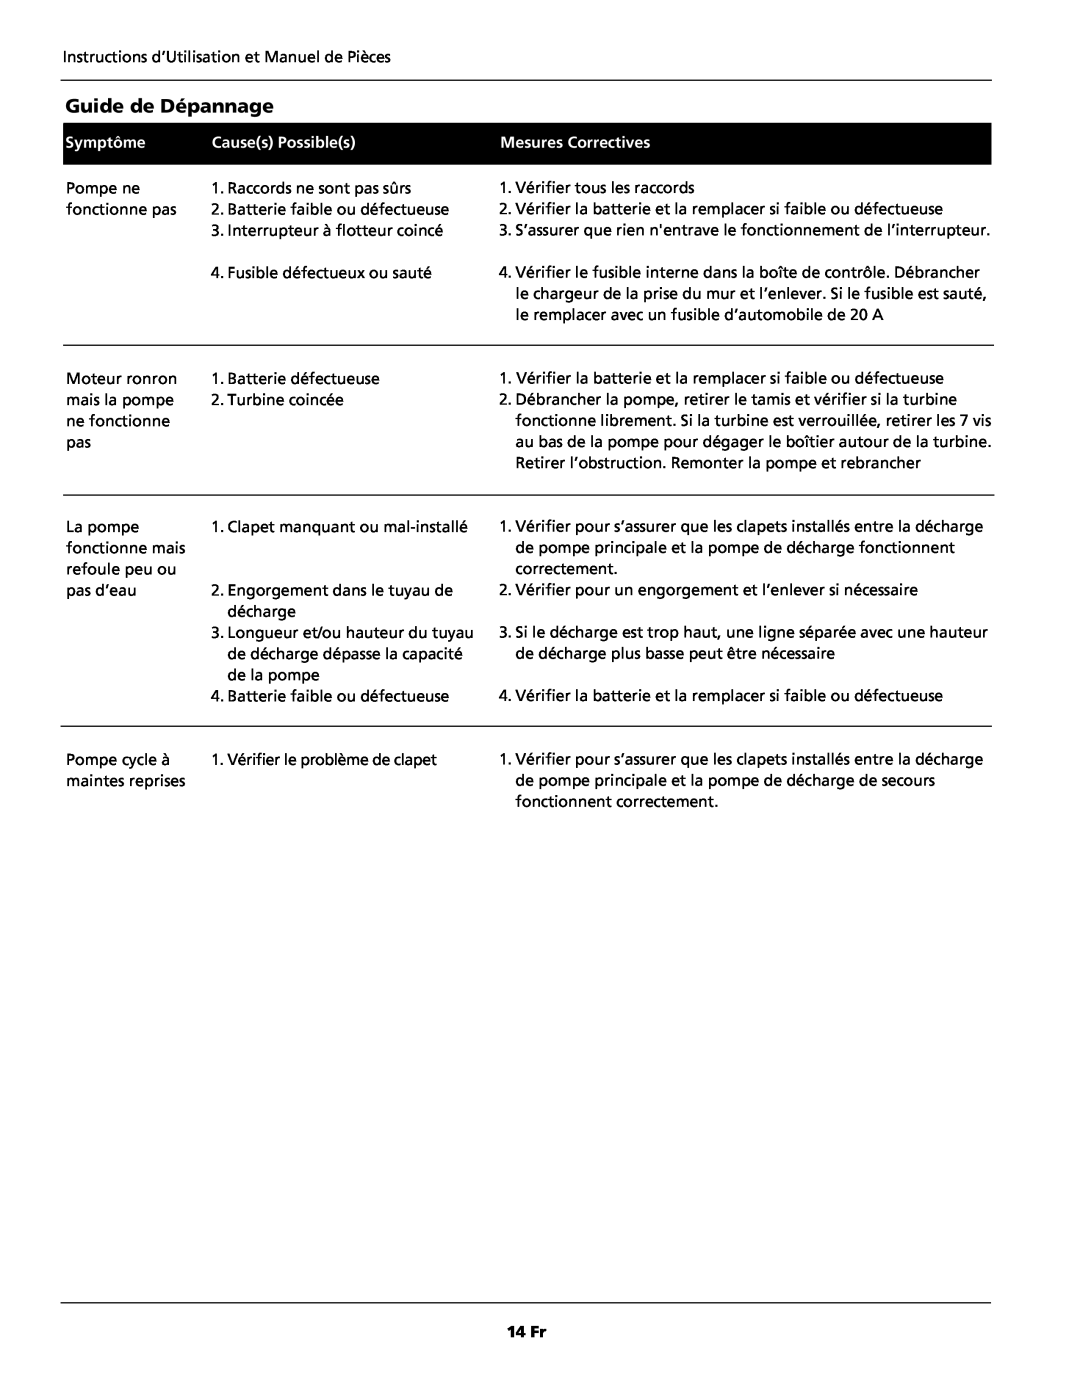 Wayne 352205-001 warranty Guide de Dépannage, Symptôme, Causes Possibles, Mesures Correctives, 14 Fr 